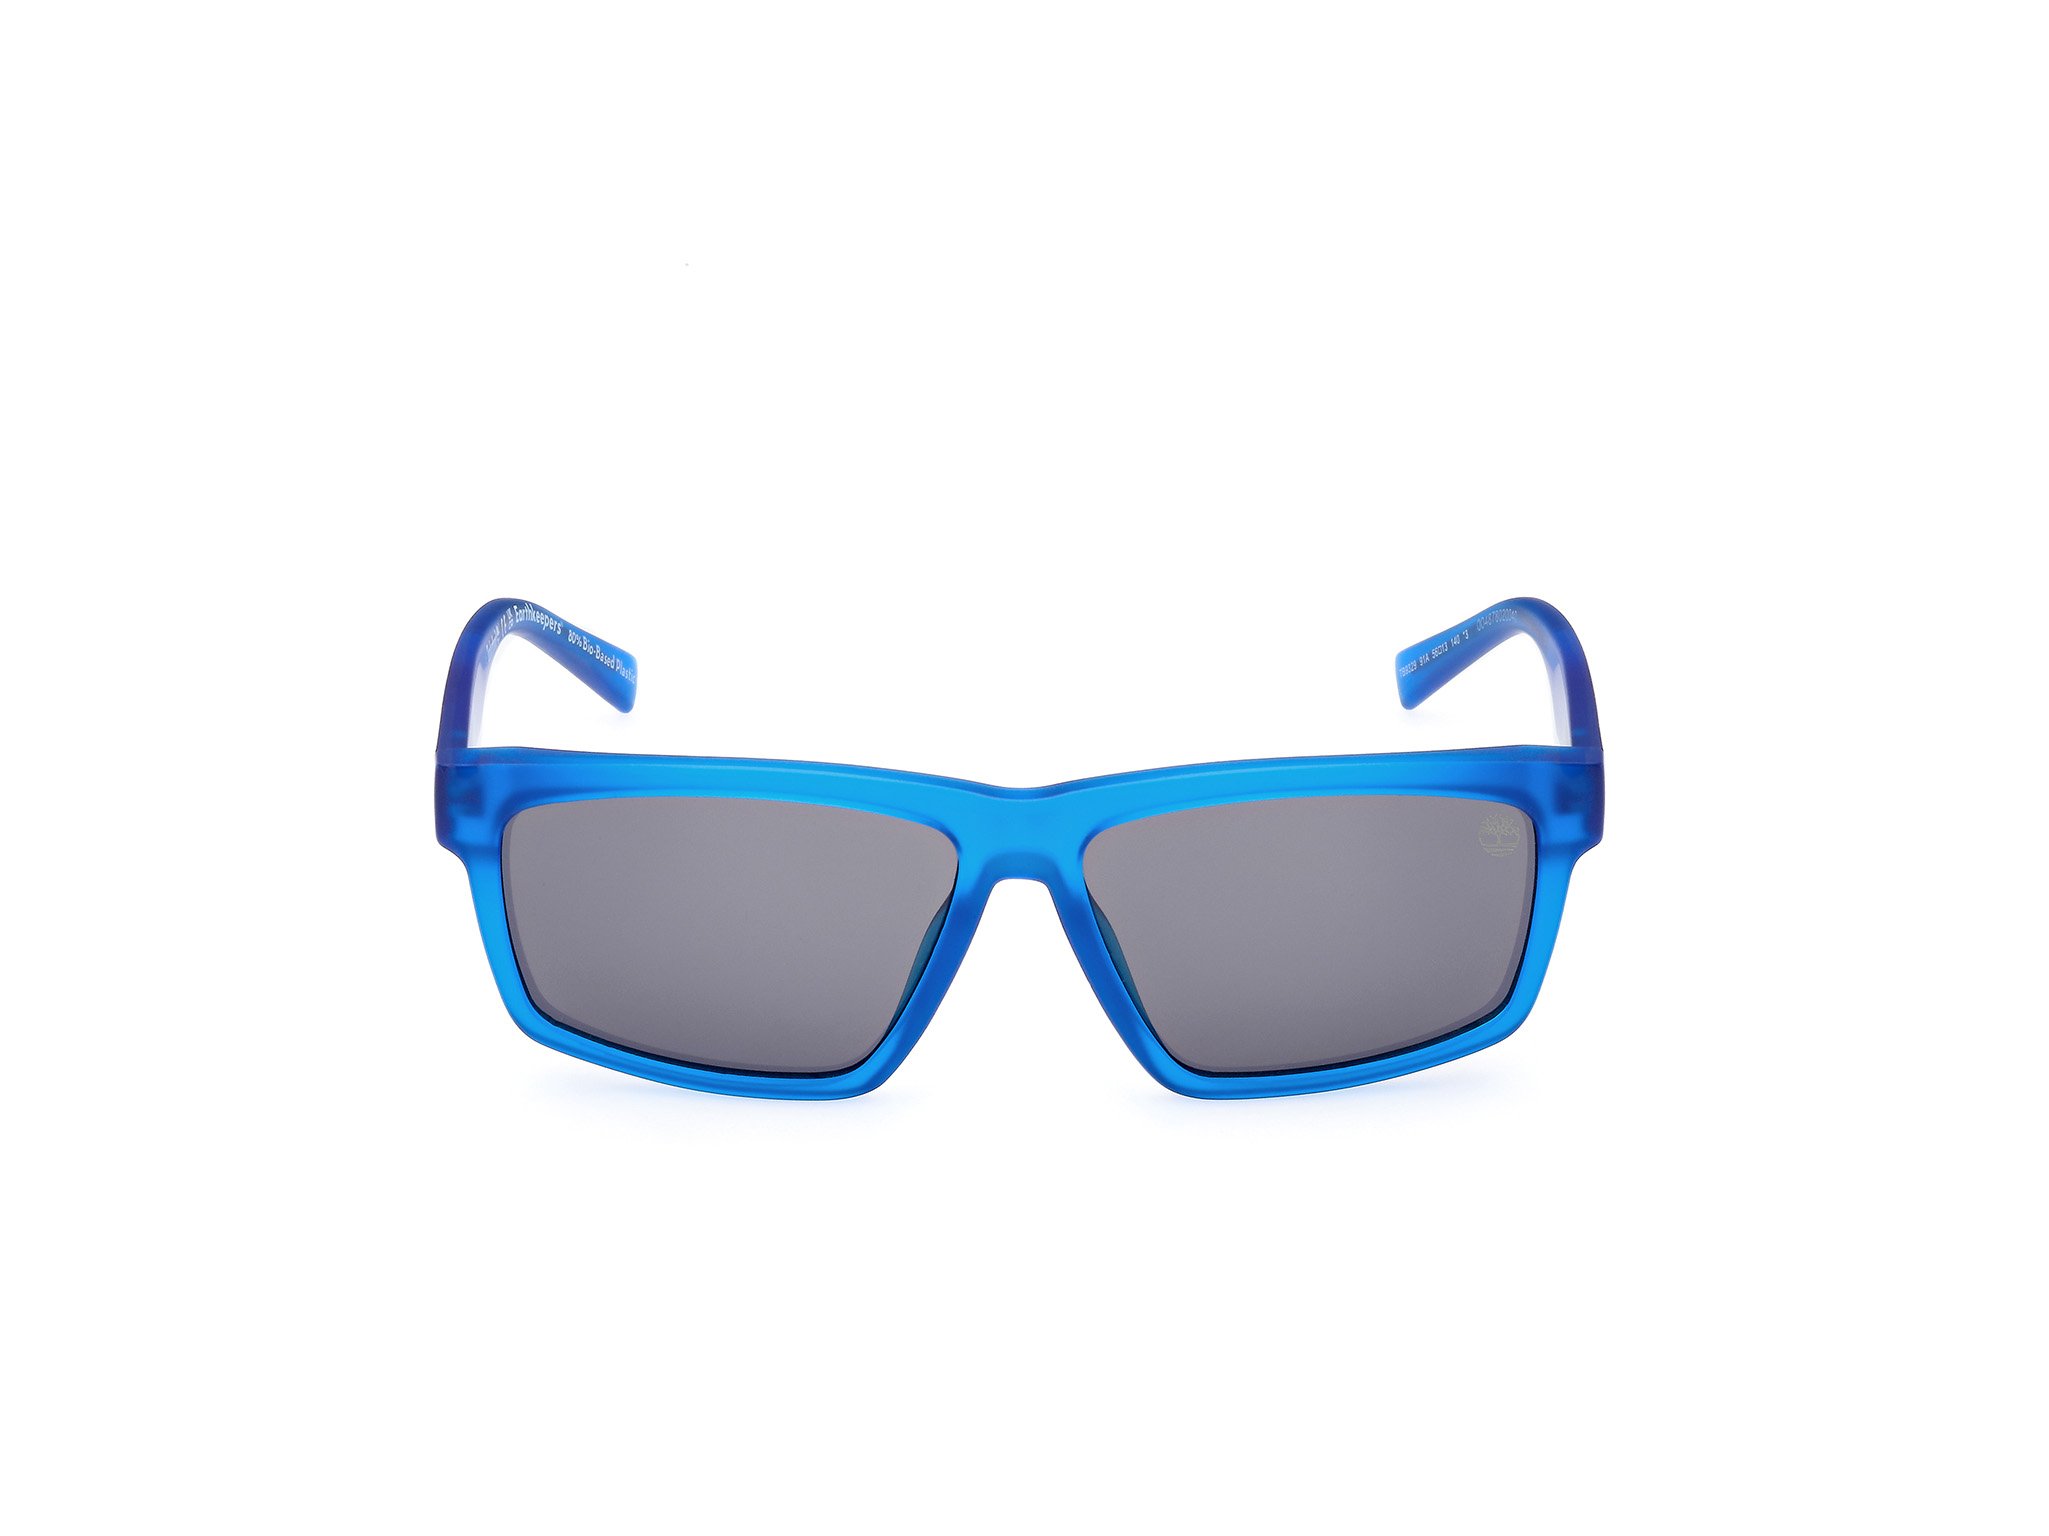 Das Bild zeigt die Sonnenbrille TB9319 47H von der Marke Timberland in transparent blau